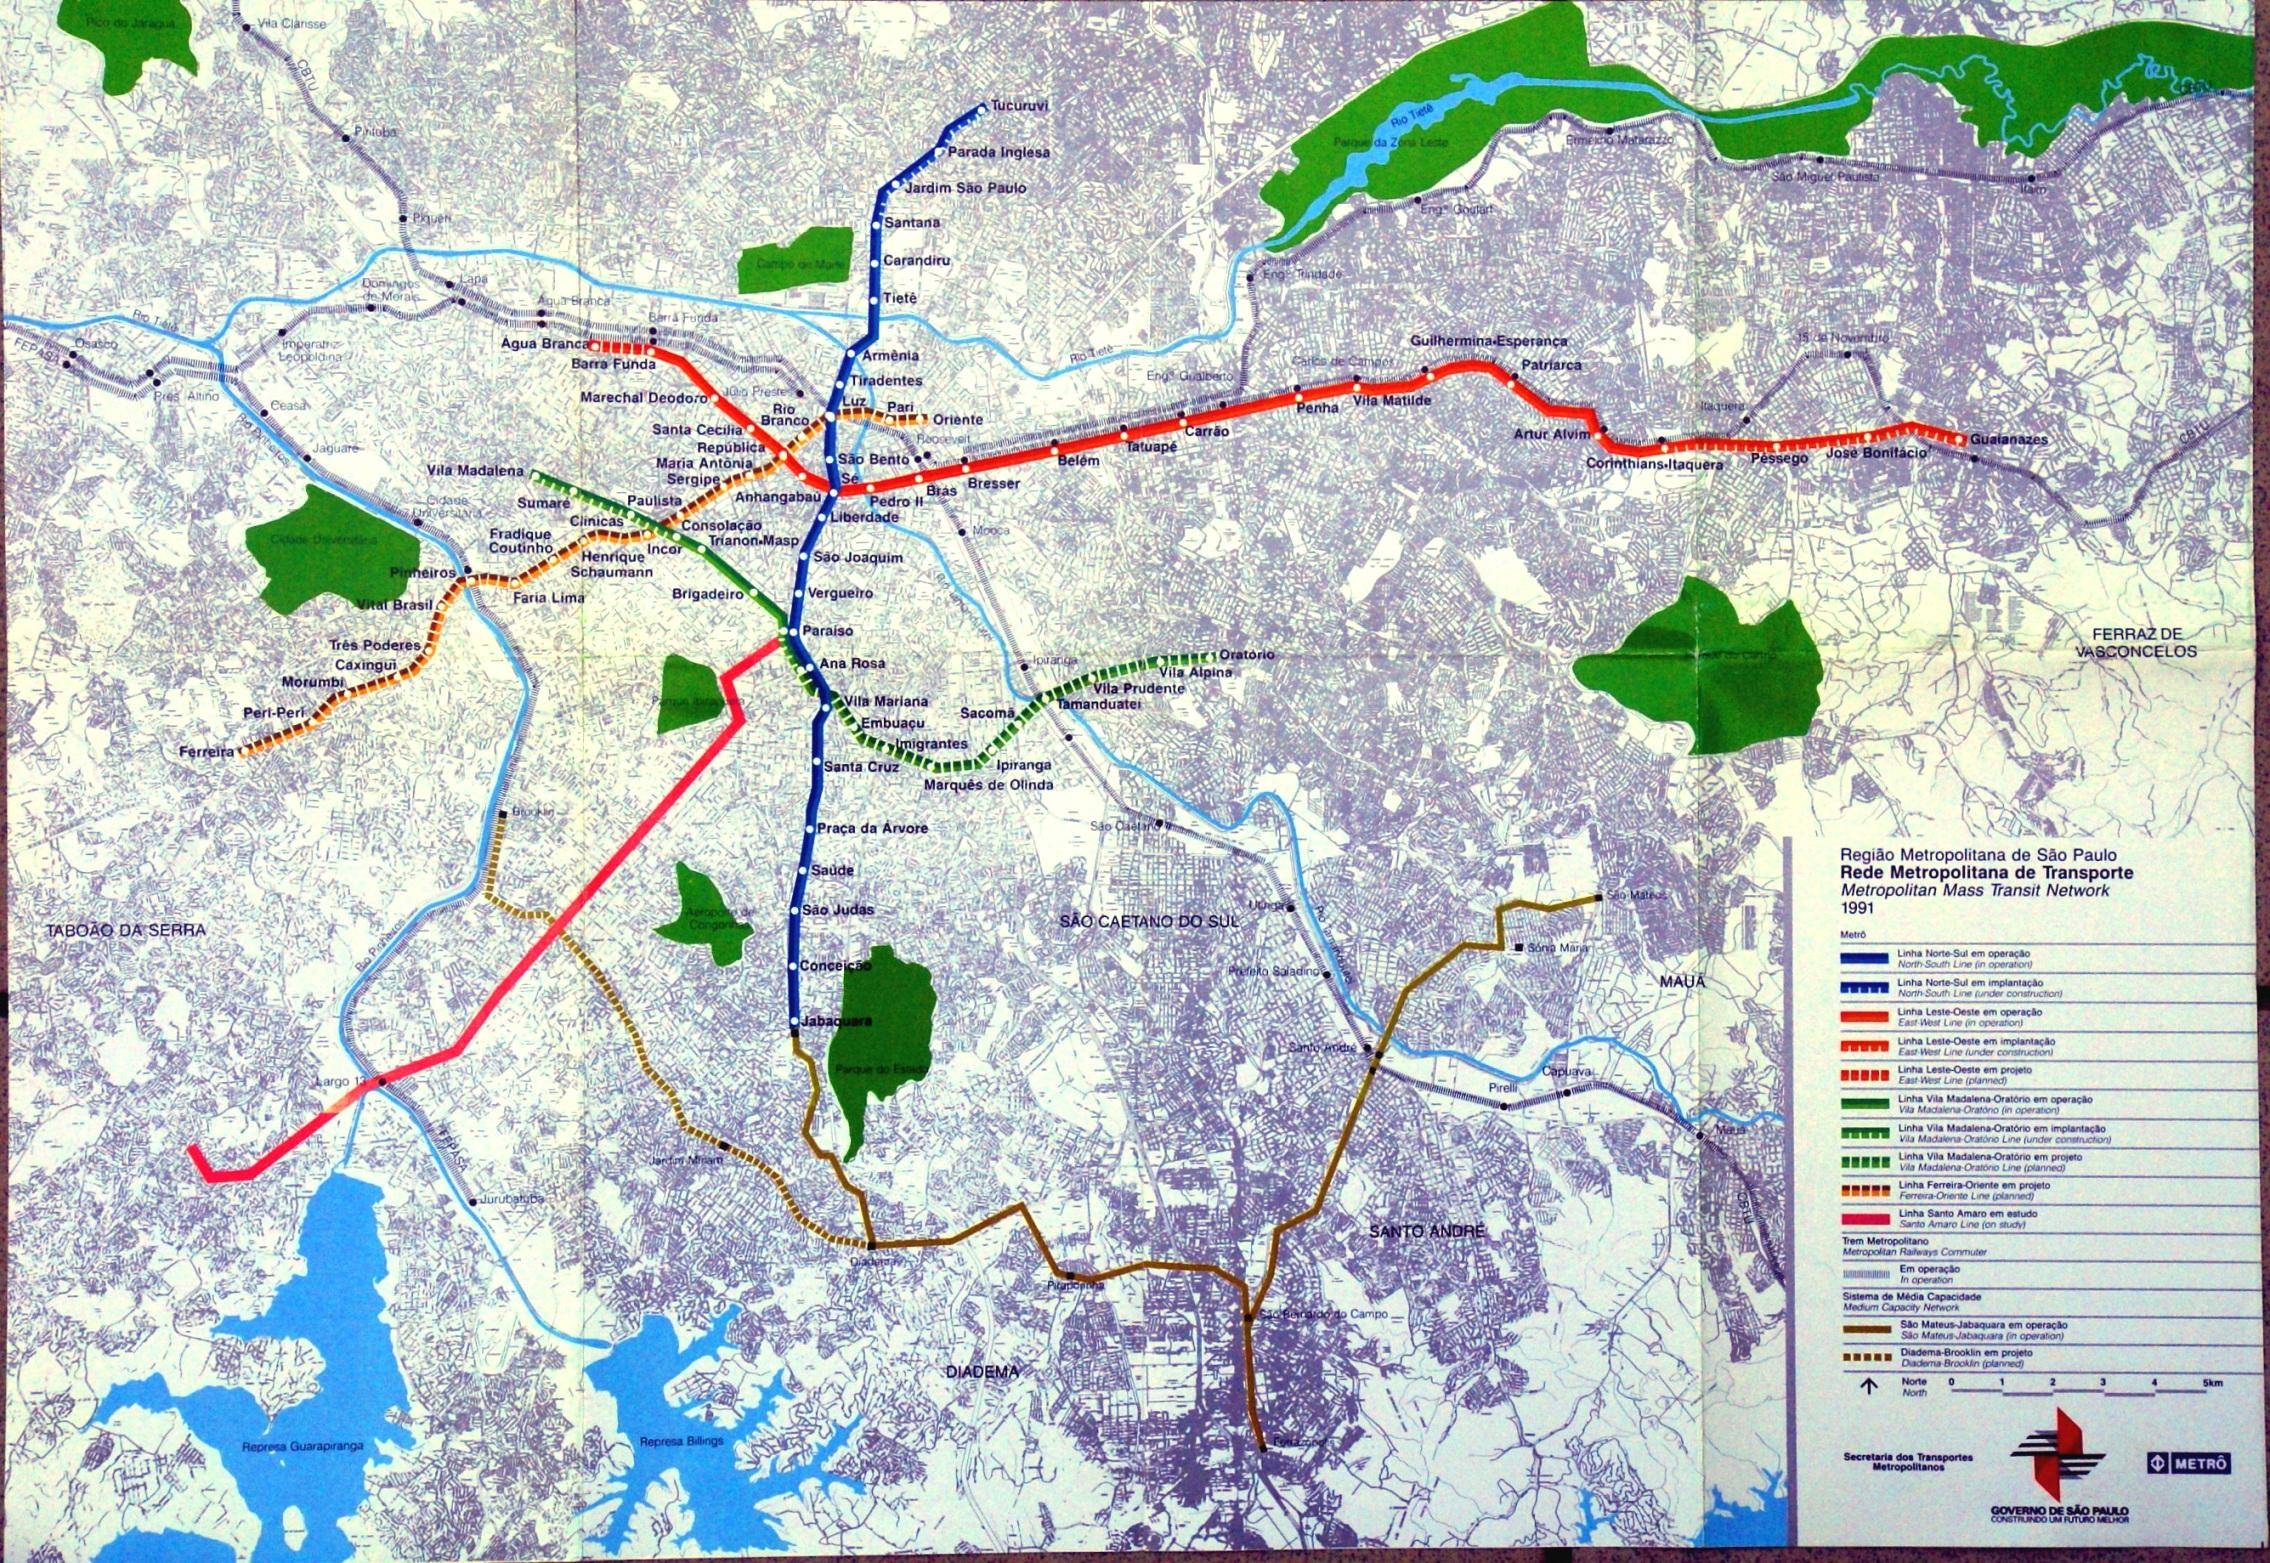 Plano do Metrô datado de 1991.